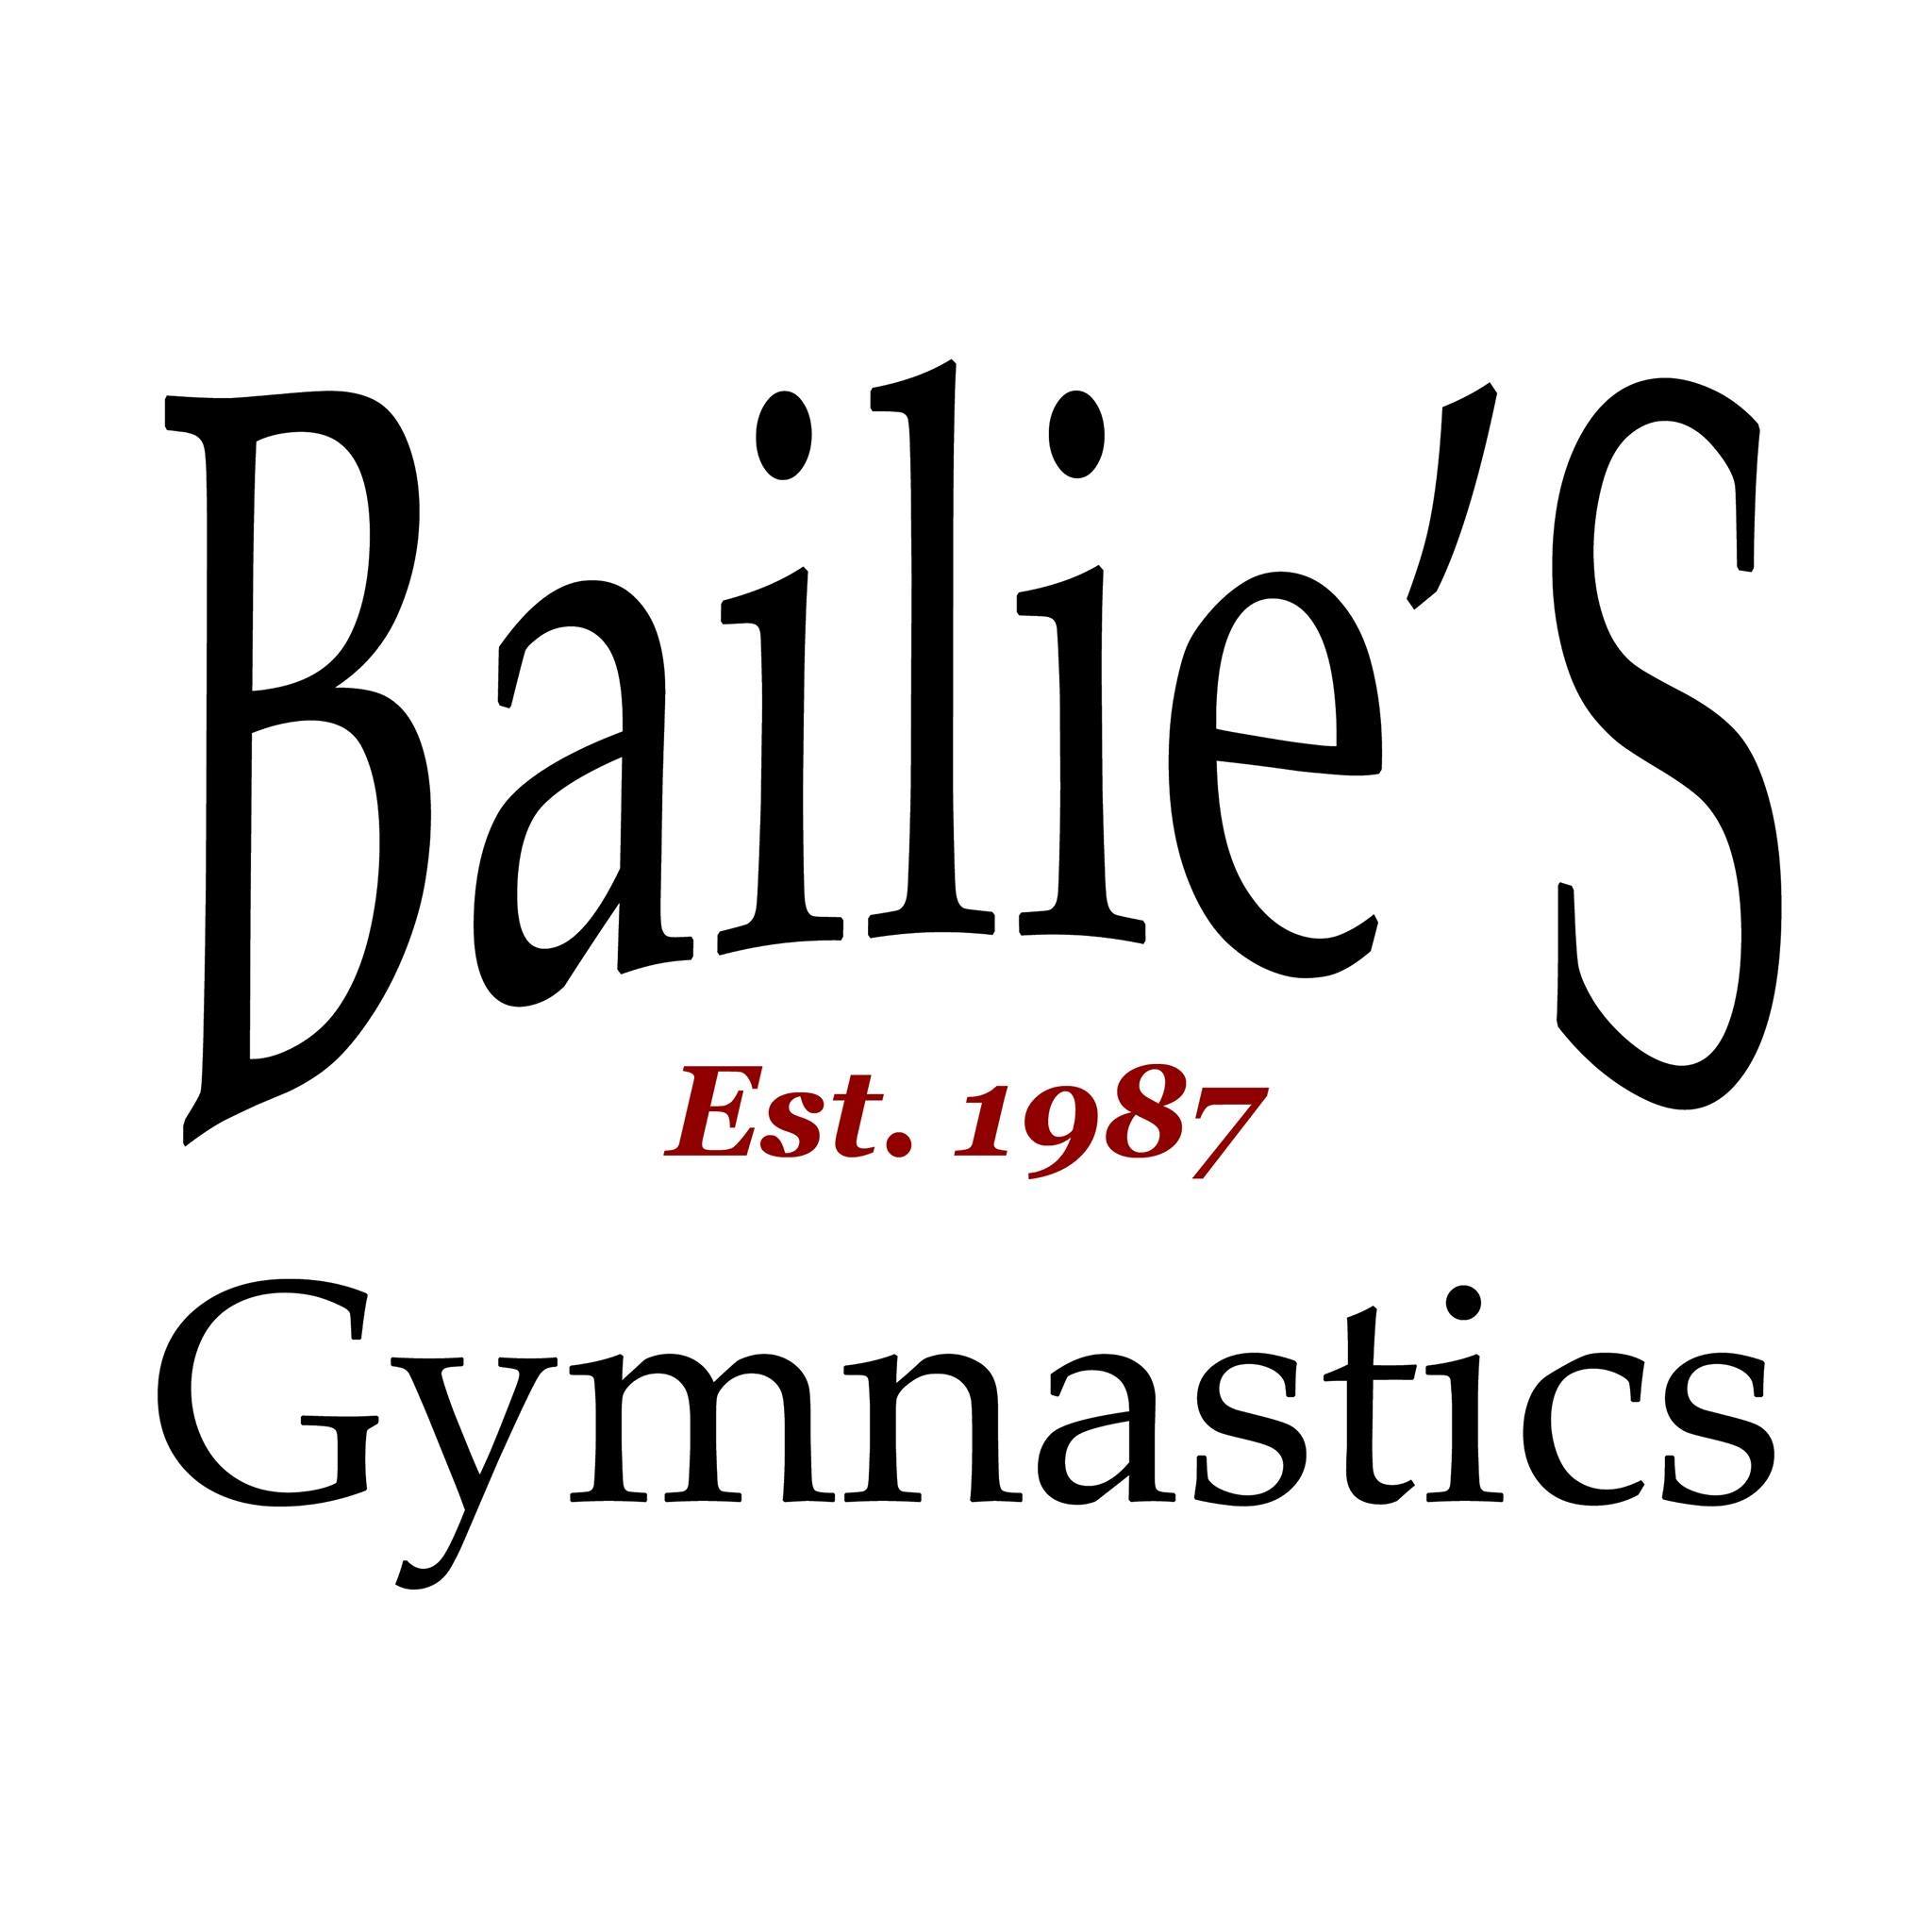 Bailie's Gymnastics